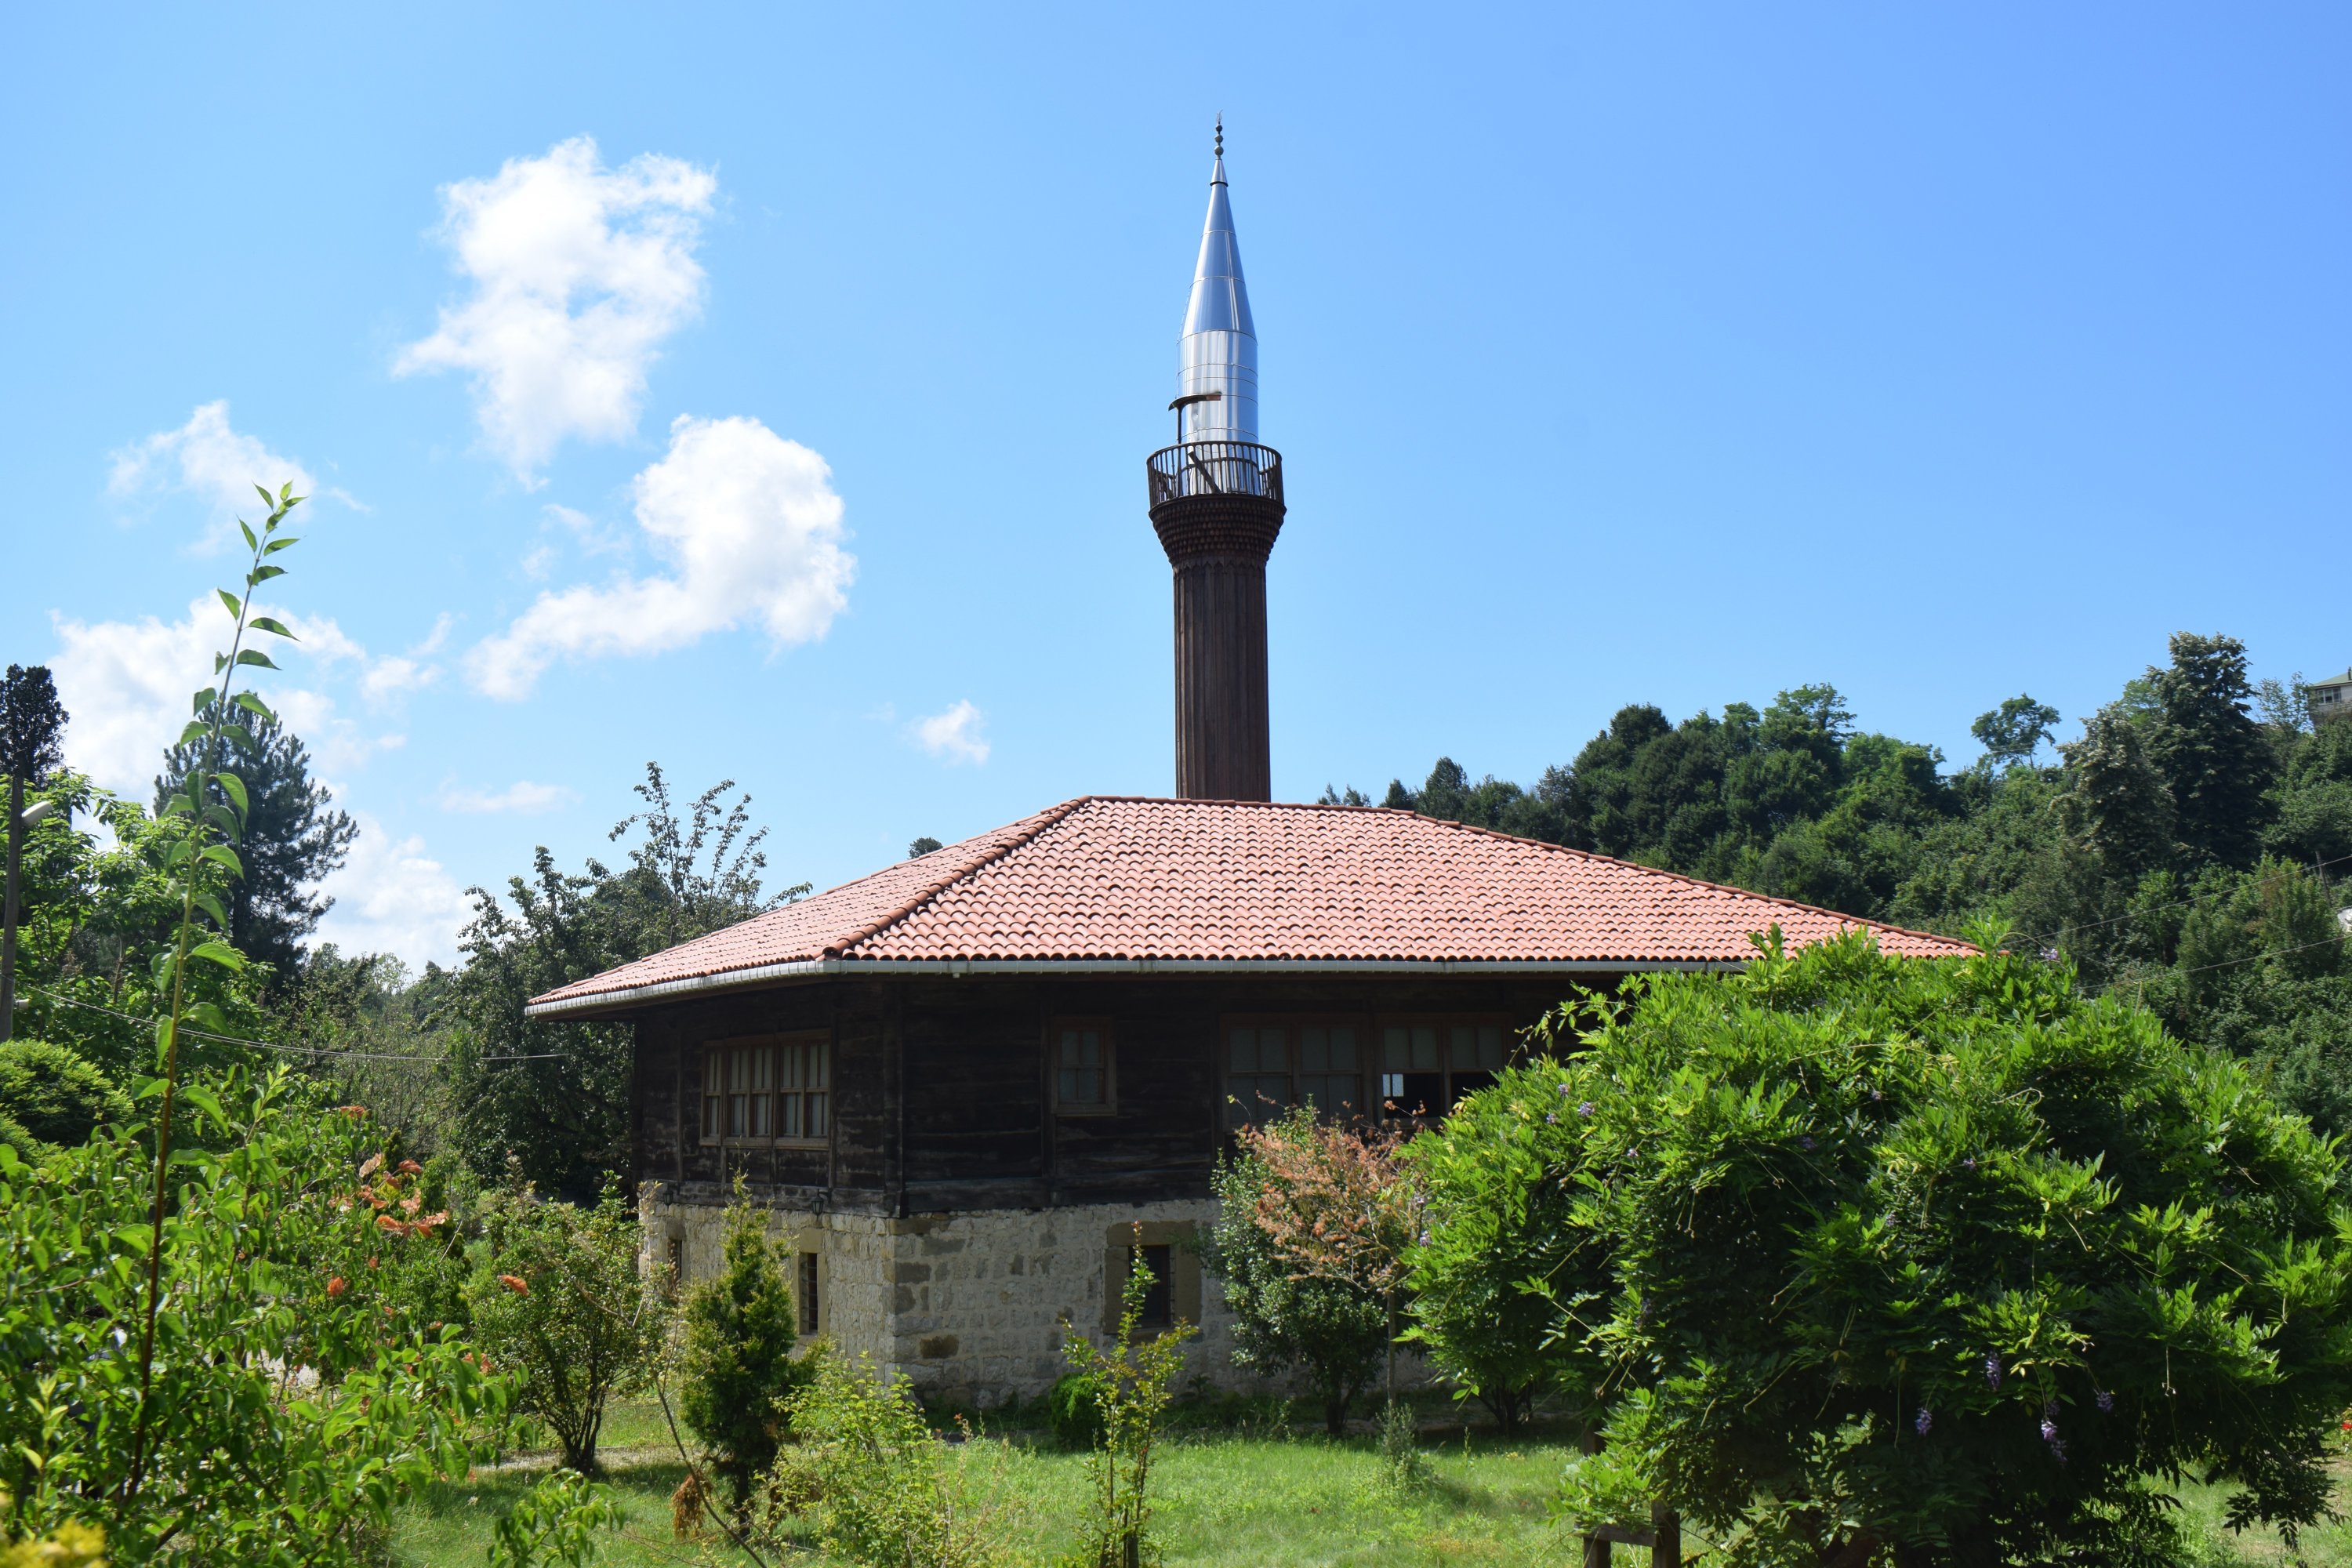 La mosquée historique Hemşin Cuma est vue dans le district d'Akçakoca de la province de Düzce, dans le nord-ouest de la Turquie, le 15 juillet 2020 (Photo AA)